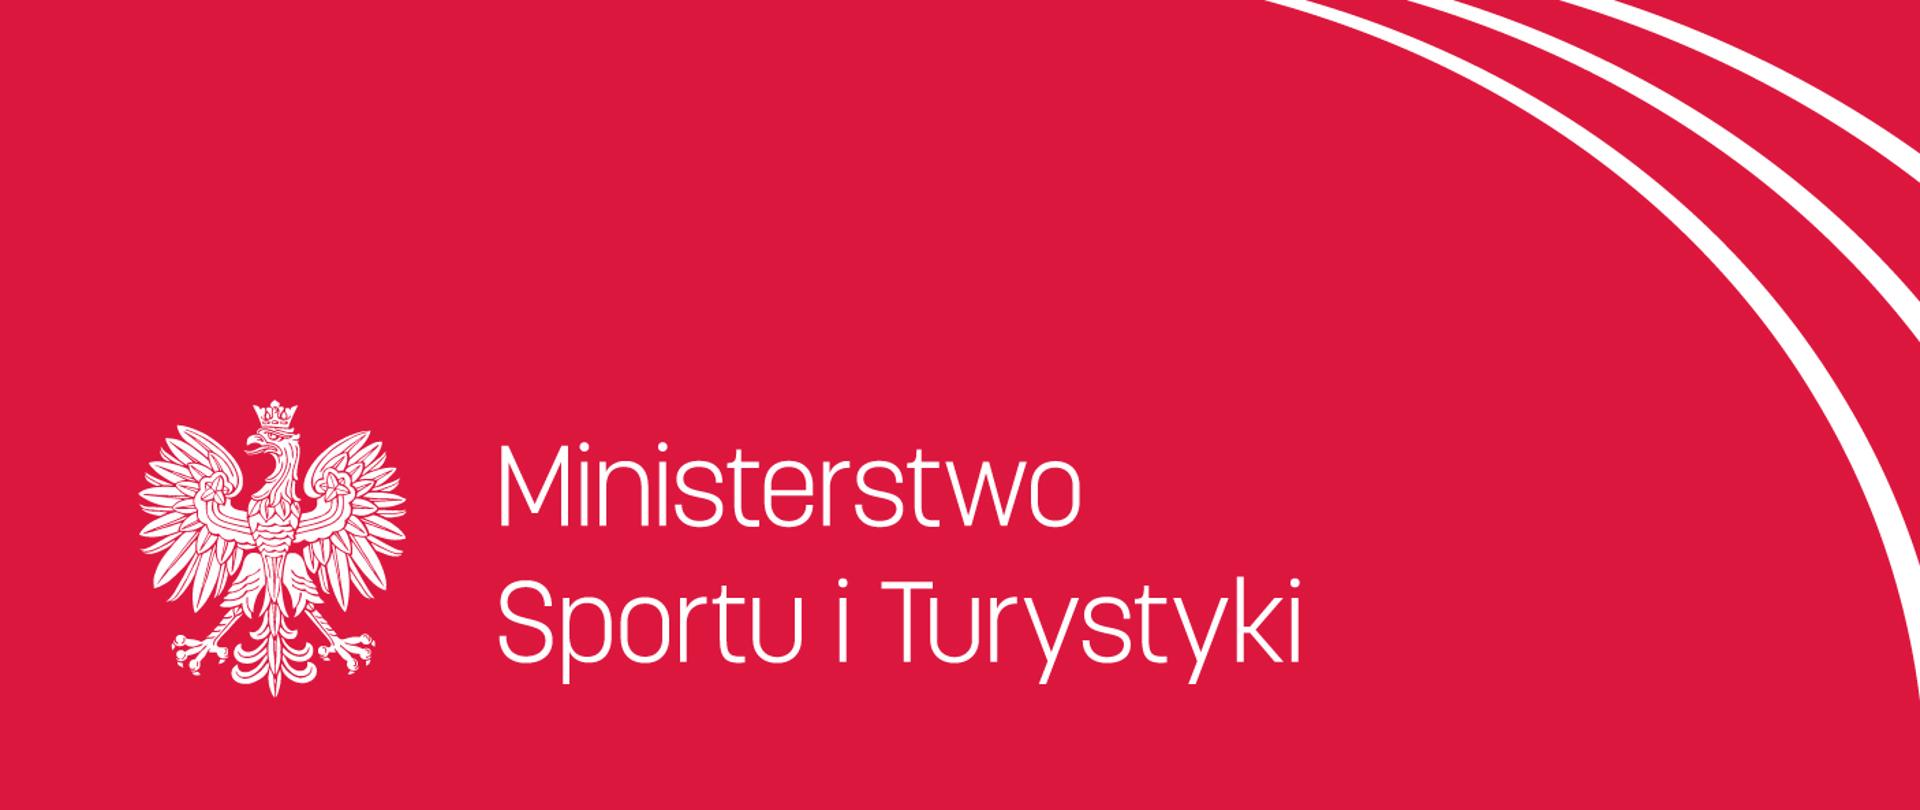 Logotyp Ministerstwa Sportu i Turystyki